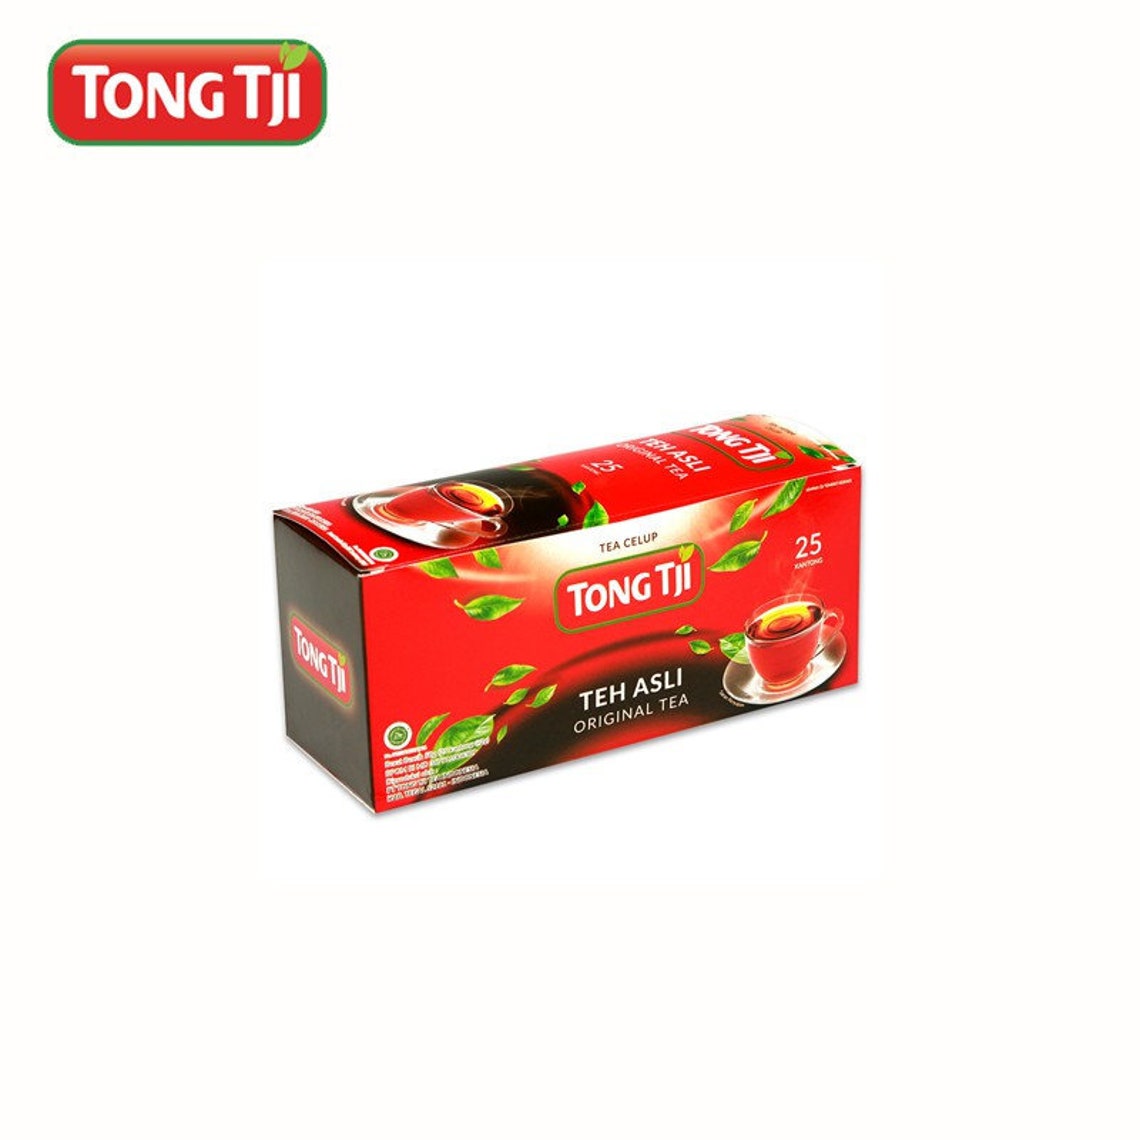 Tong Tji Black Tea 25-ct 50 Gram Indonesia - Etsy UK